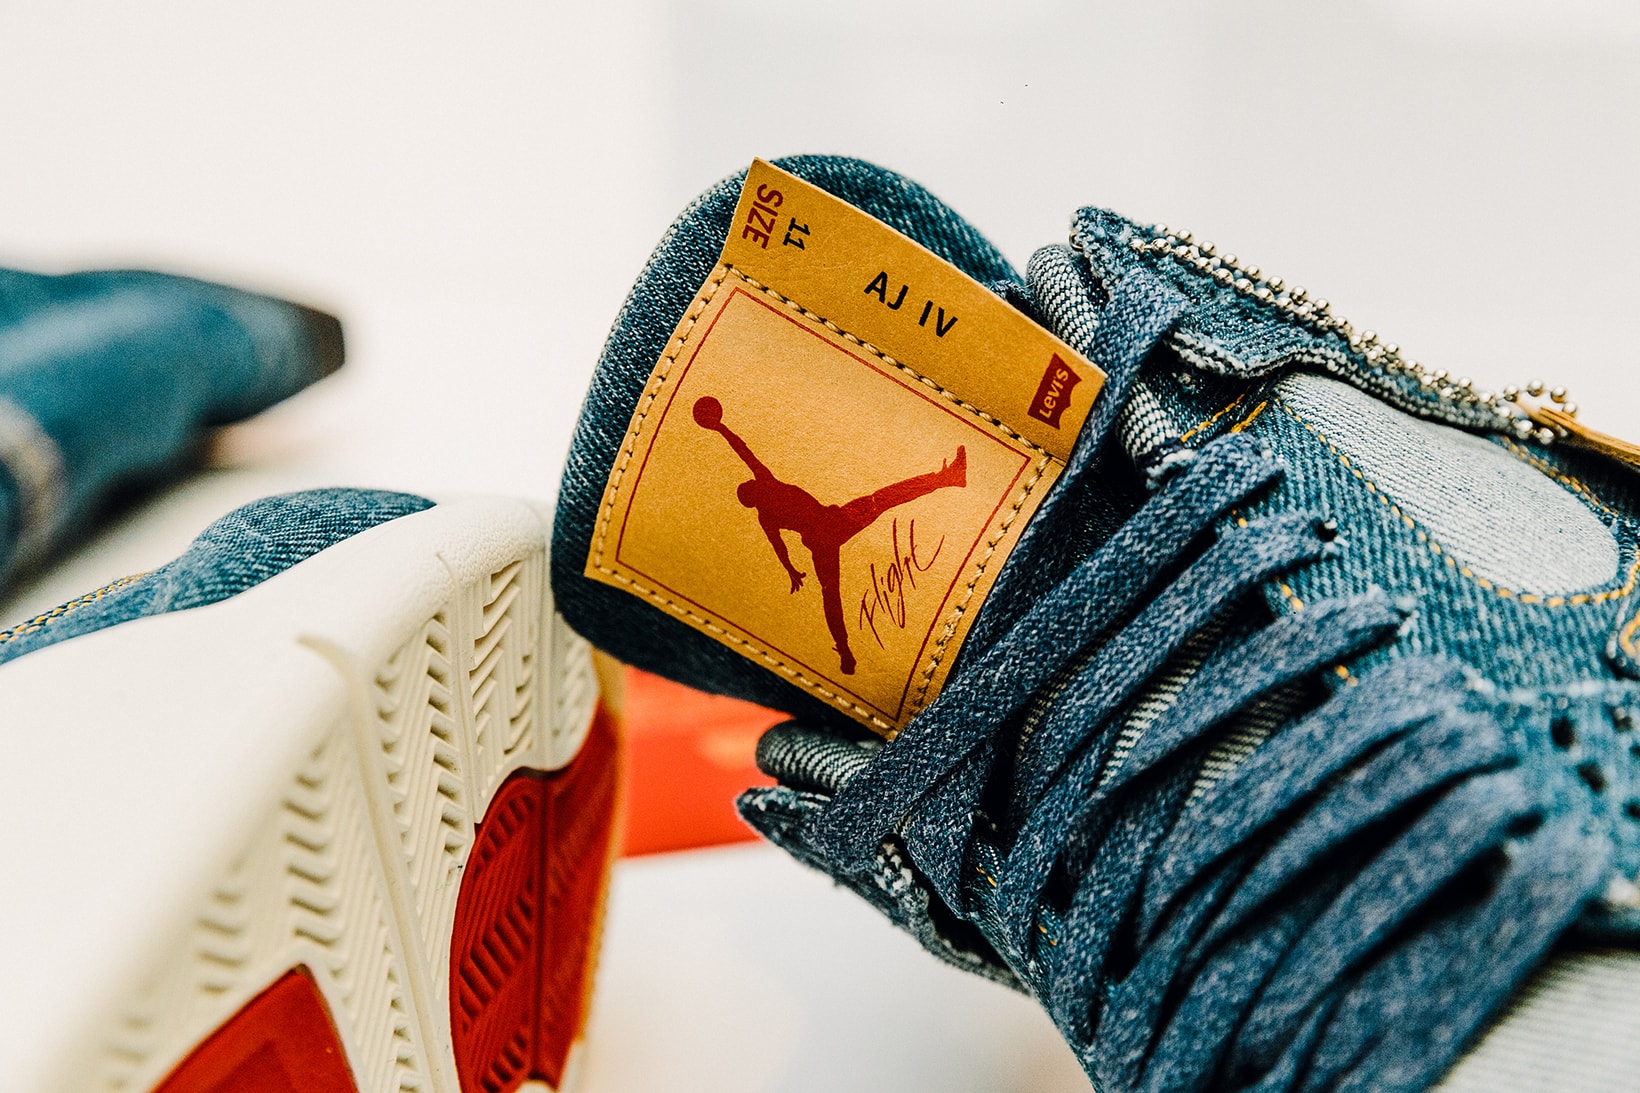 Jordan Brand Levis Air Jordan 4 Trucker Jacket fashion footwear 2018 January 17 Release Date Info